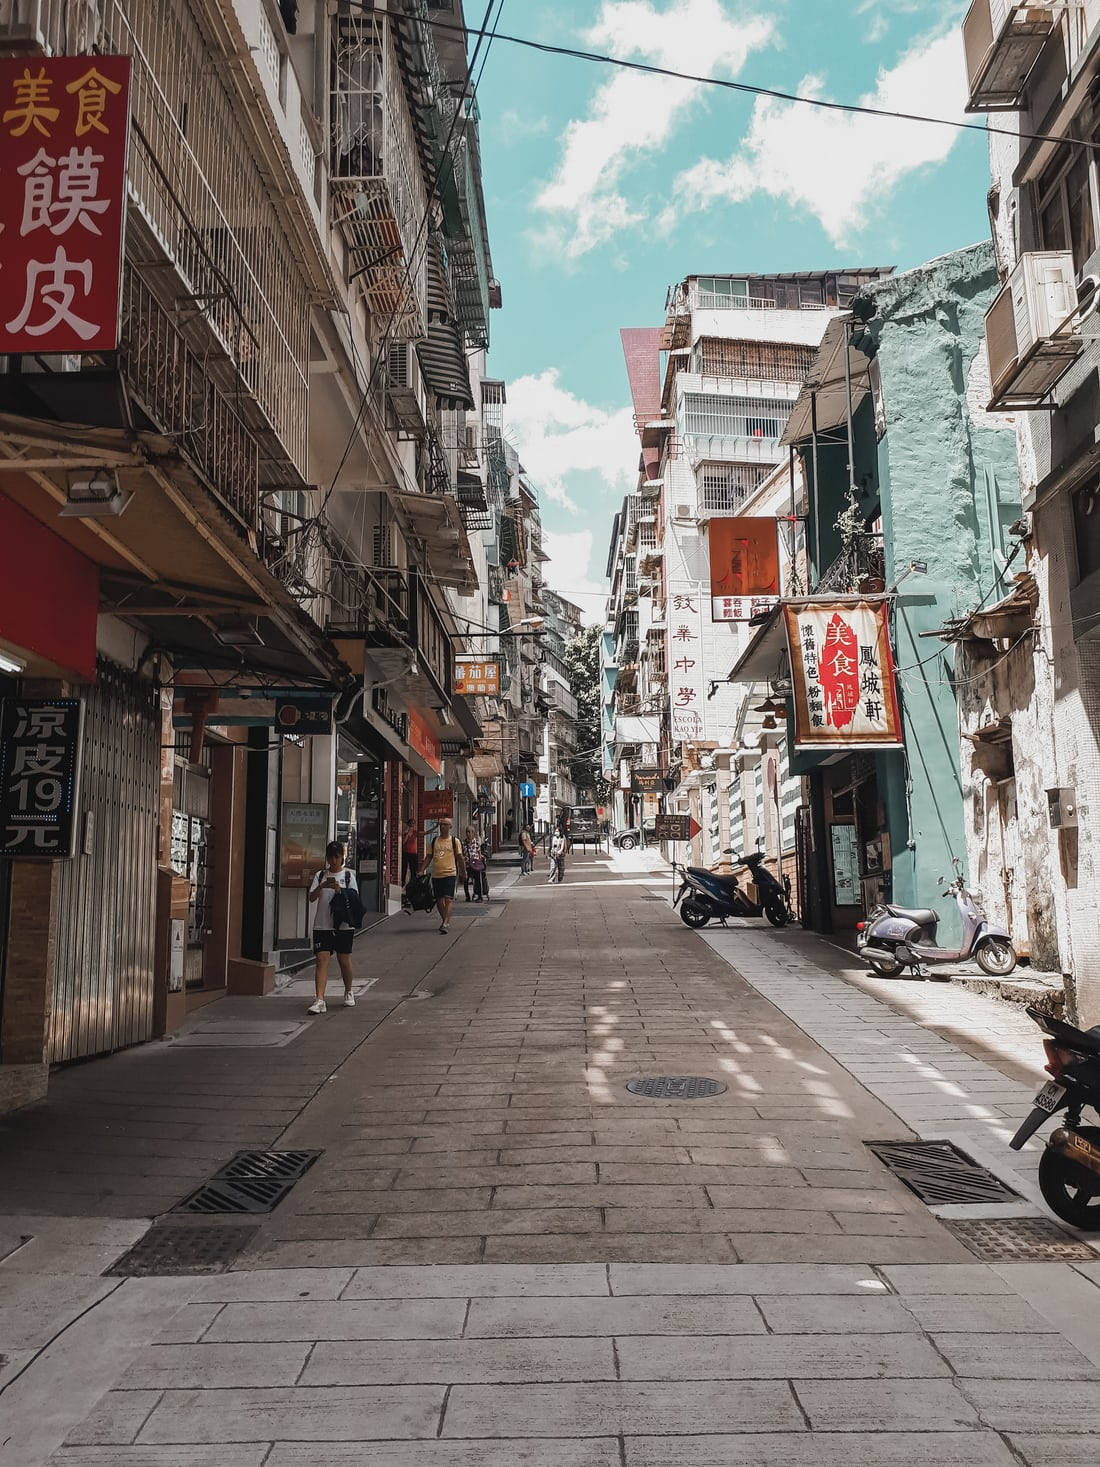 Chinatownfotografie Im One-point-perspektive-stil Wallpaper